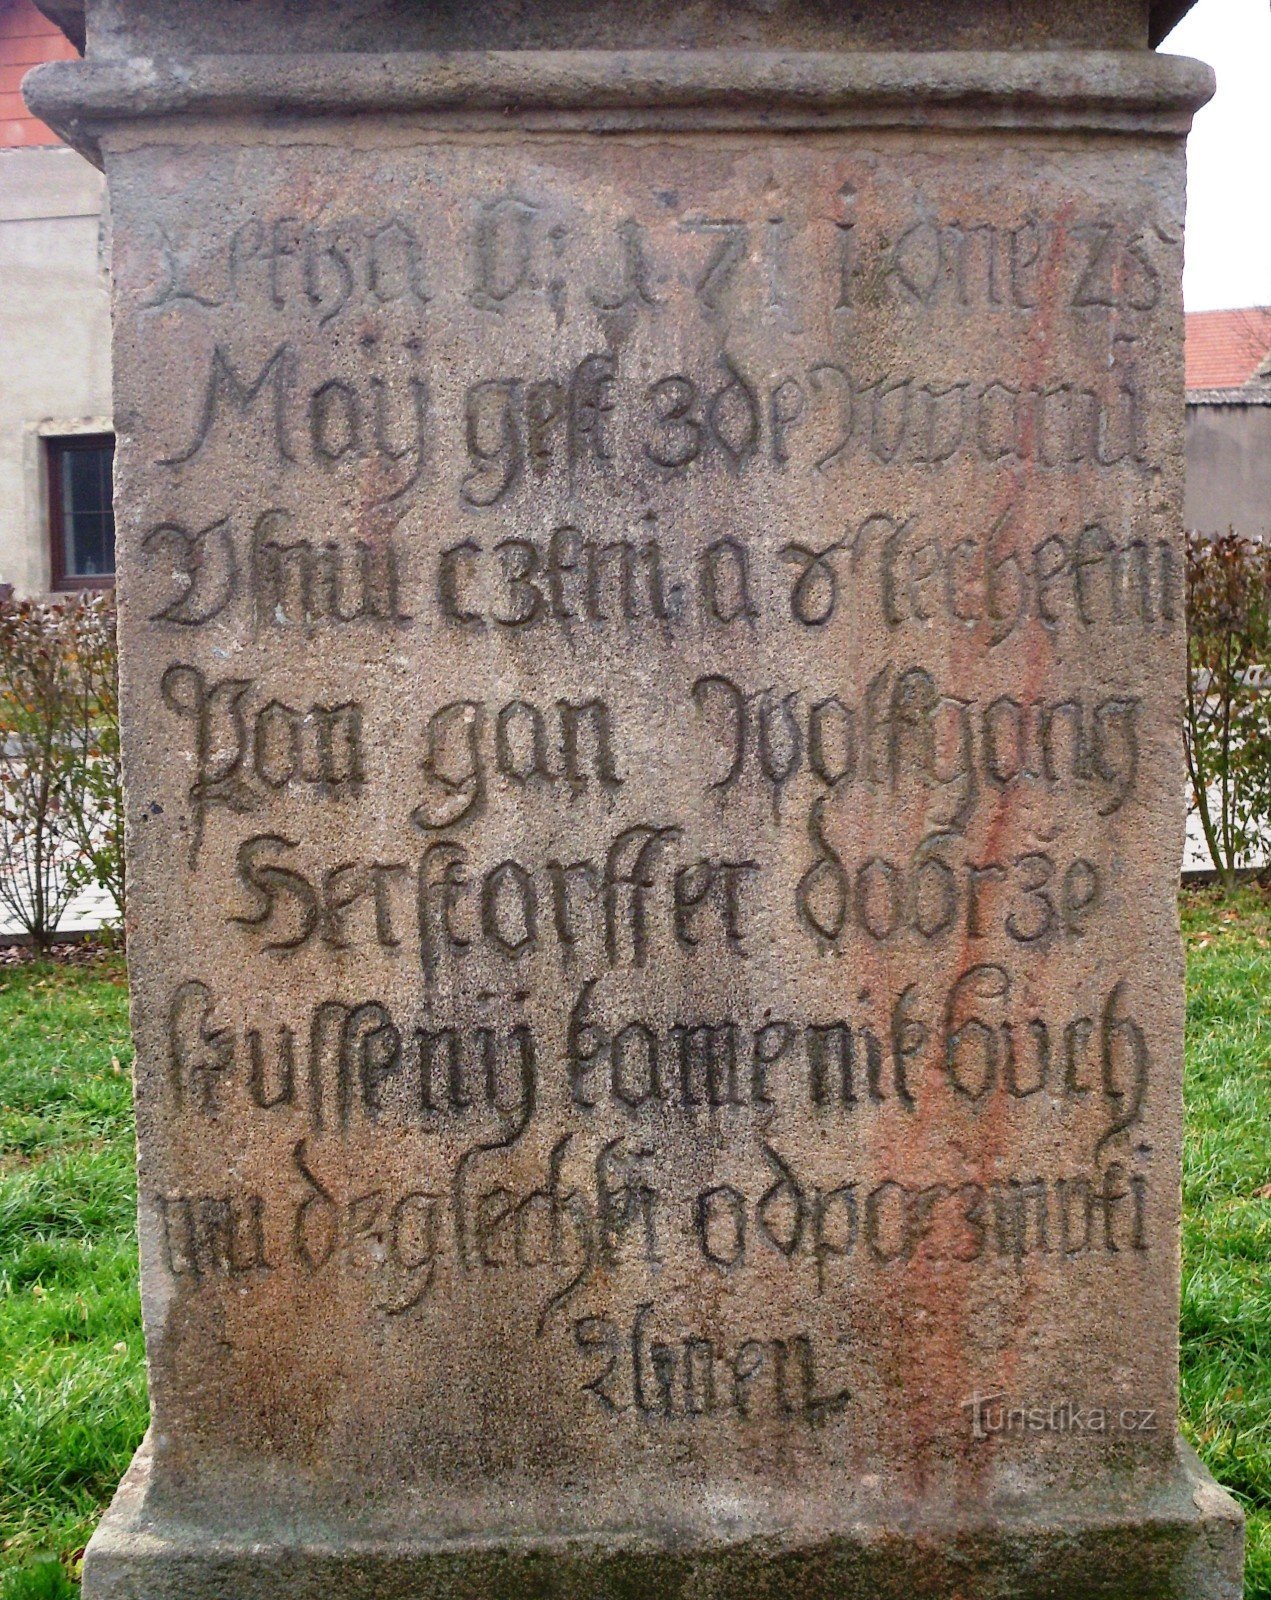 um lado do pedestal da estátua de St. Chama